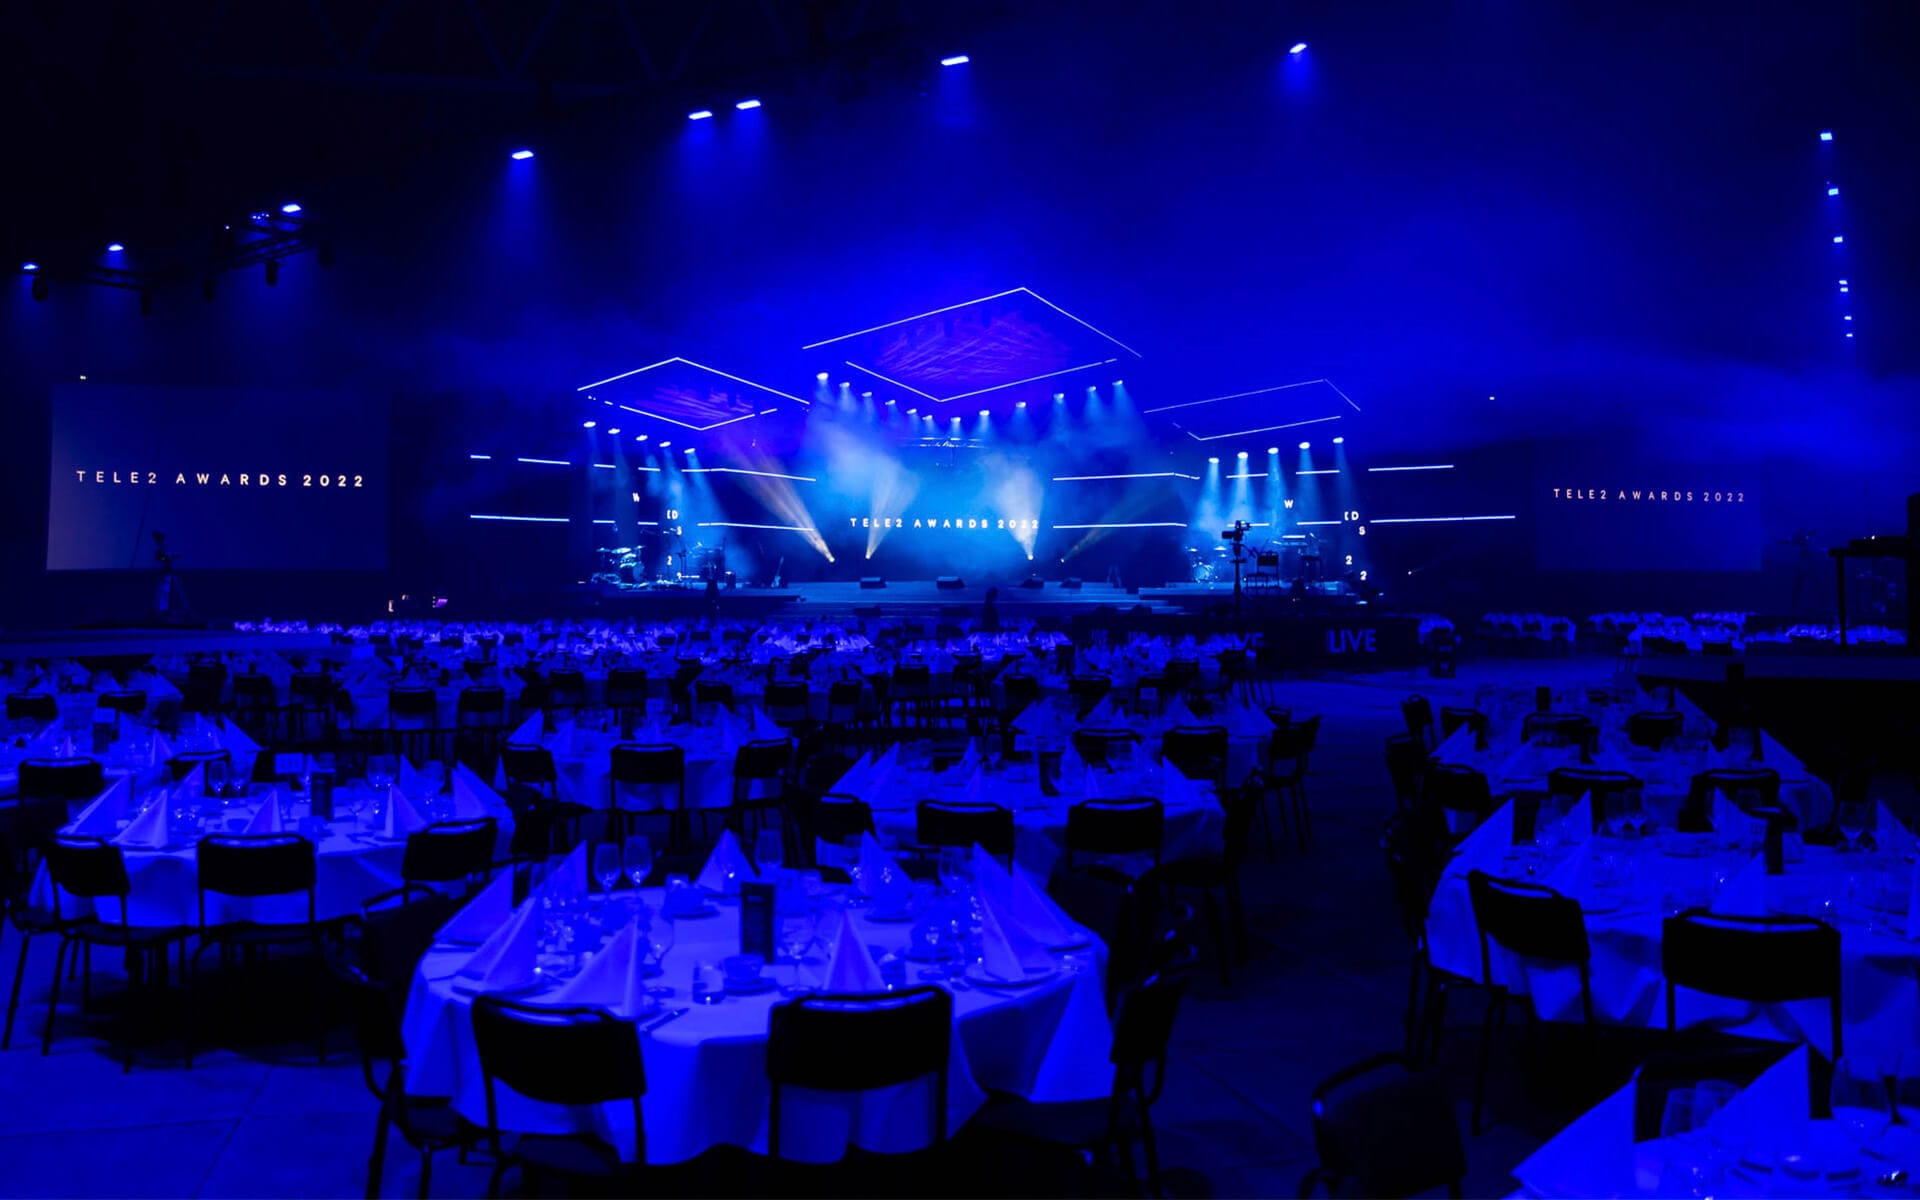 Scenen för Tele2 Awards 2022 företagsevent på Tele2 Arena